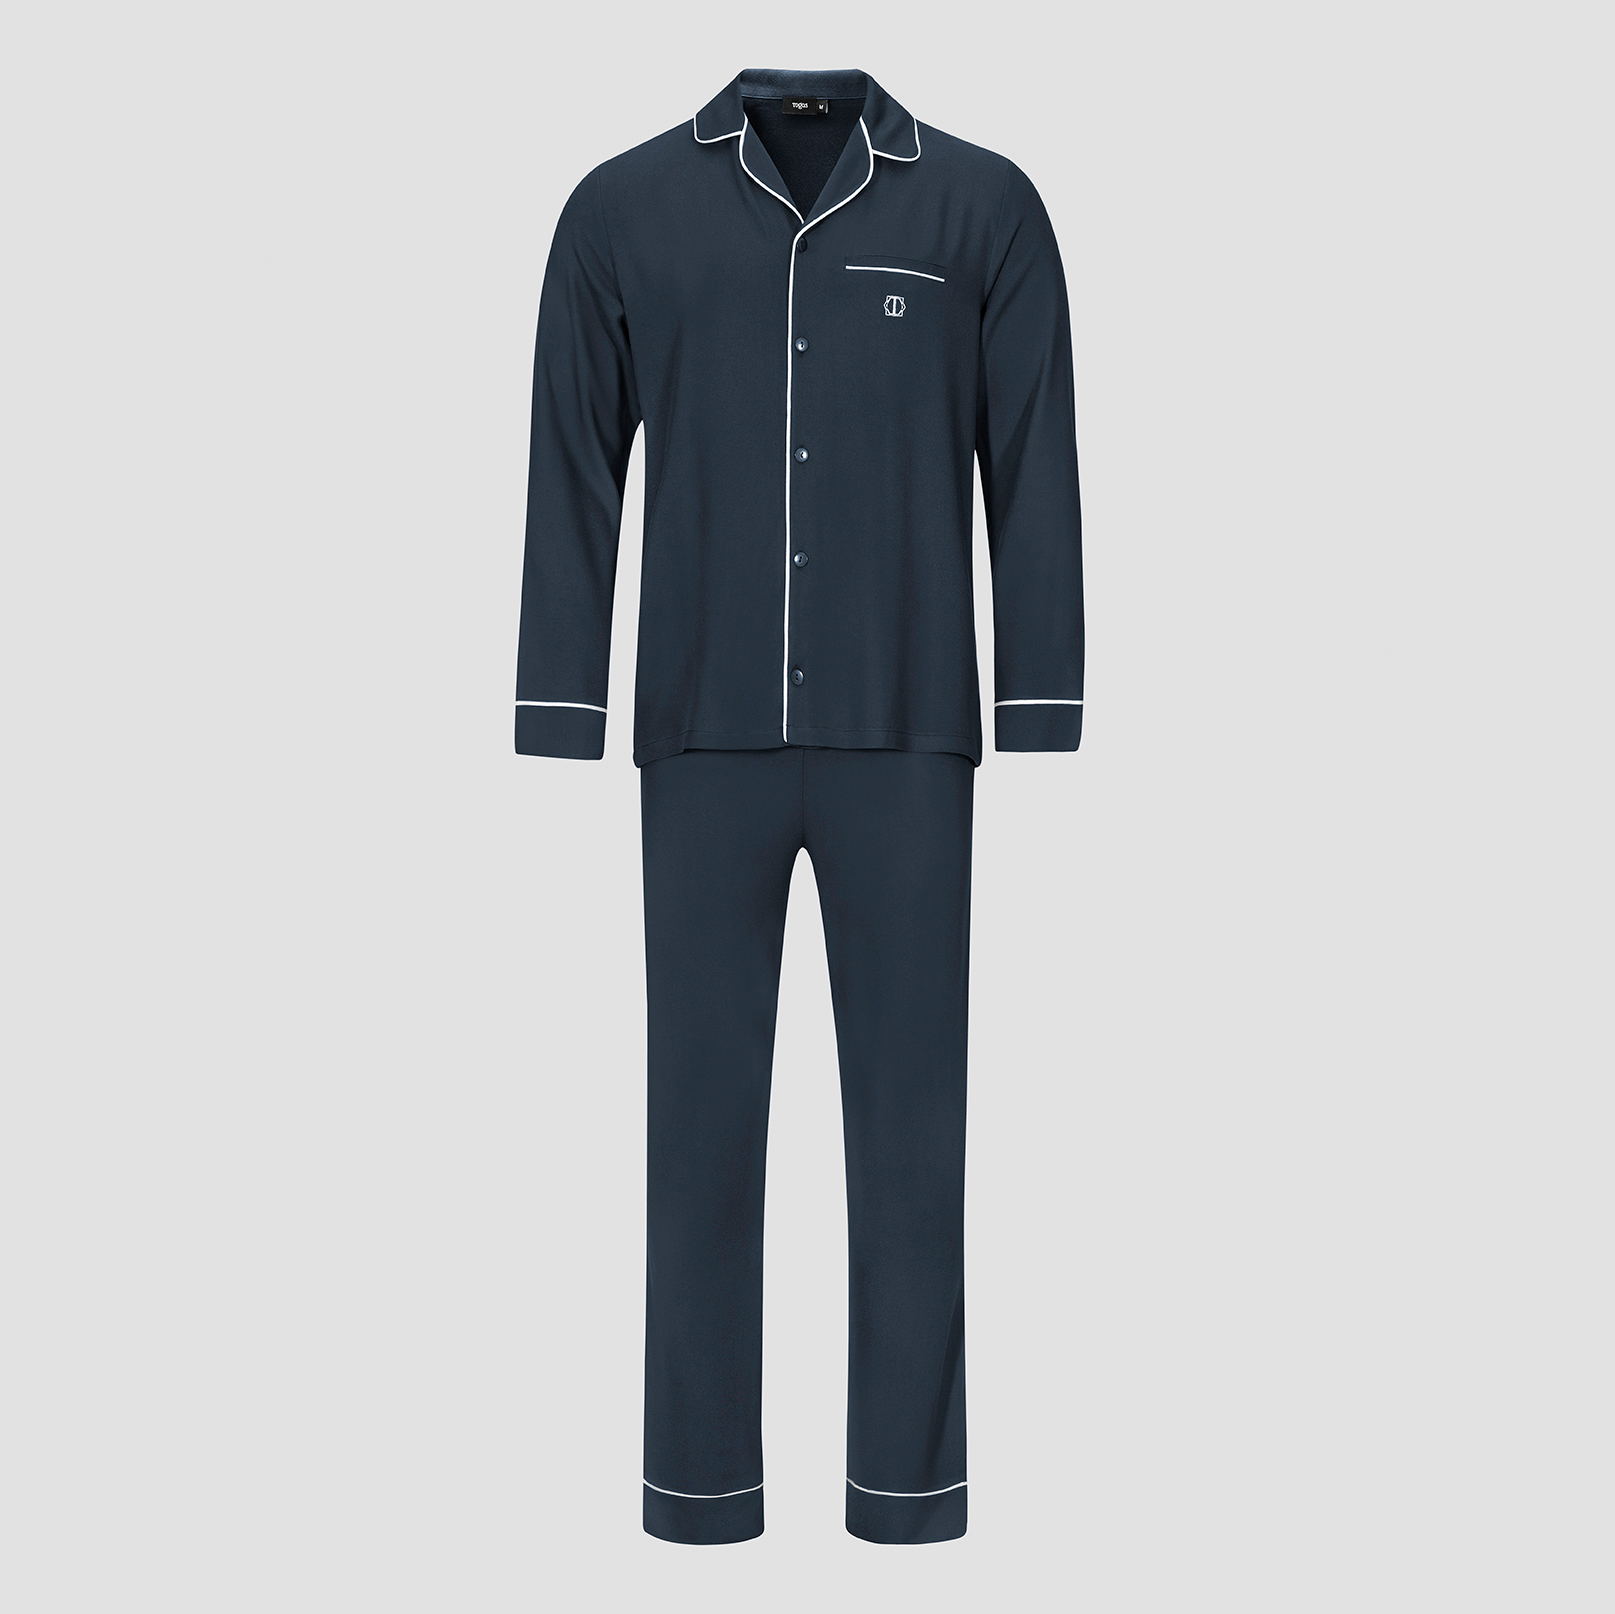 Пижама мужская Togas Альбен темно-синяя 2 предмета пижама джемпер брюки